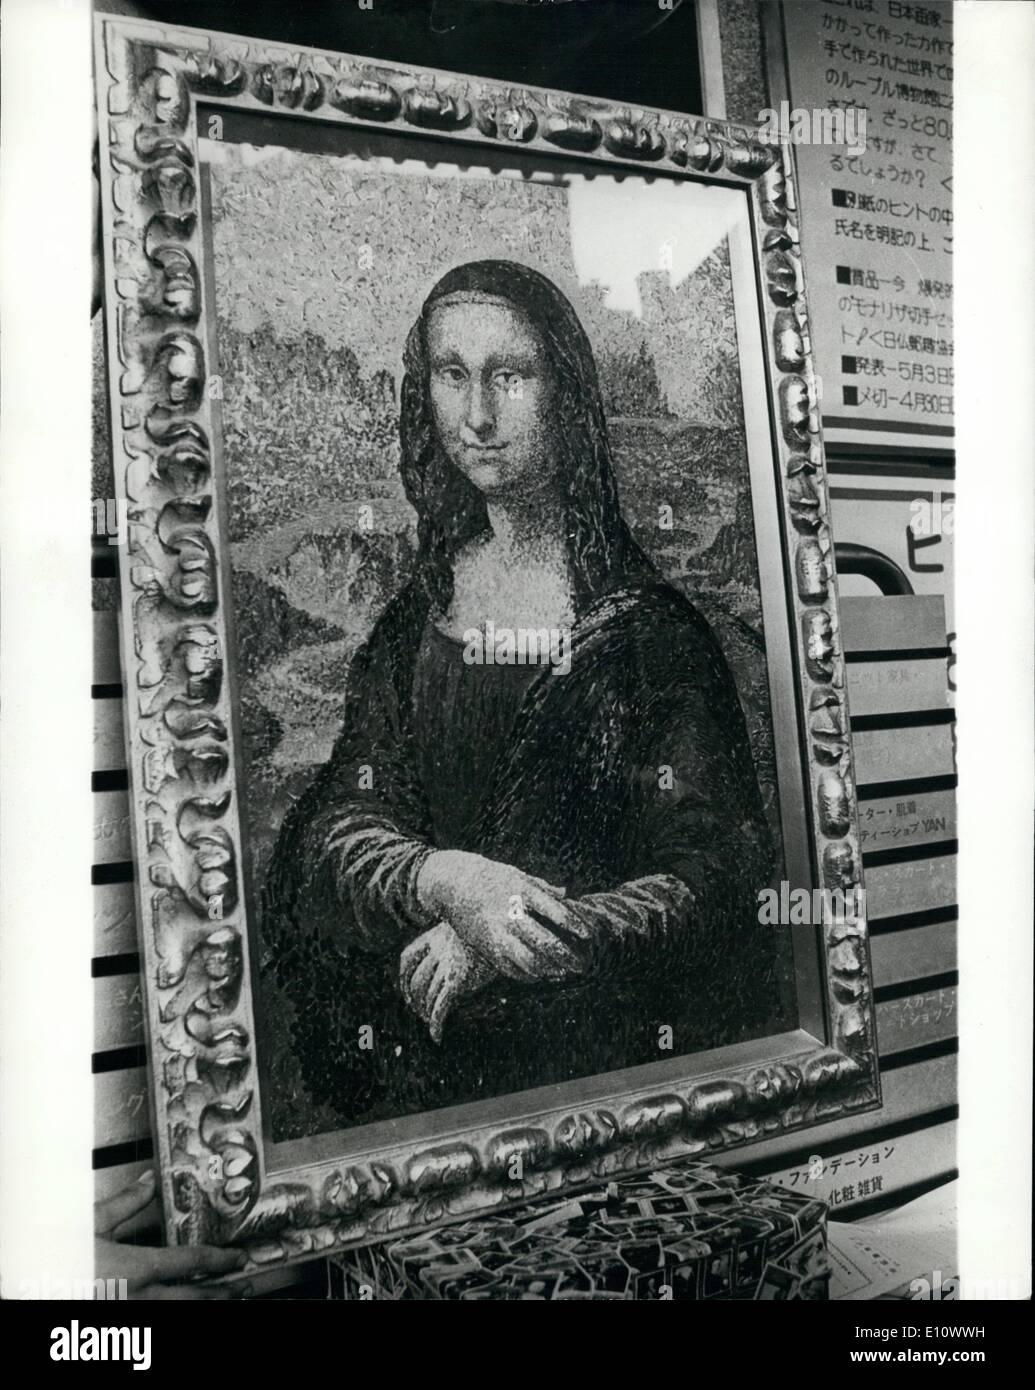 Mai 05, 1974 - ''La Joconde'' peint avec 80 000 timbres-poste : à l'aide de portions de 80 000 timbres-poste en tant que pièces de la mosaïque. Artiste japonais Isamu Goto a peint'' ''le portrait de la célèbre Mona Lisa à la taille exacte de la photo d'origine, actuellement exposées à Tokyo après avoir atterri dans de chez elle à l'Hôtel du Louvre à Paris. Il a fallu aller a trois mois pour assembler les pièces de la mosaïque de timbres-poste dans sa reproduction de la peinture qui est également exposé à Tokyo. Banque D'Images